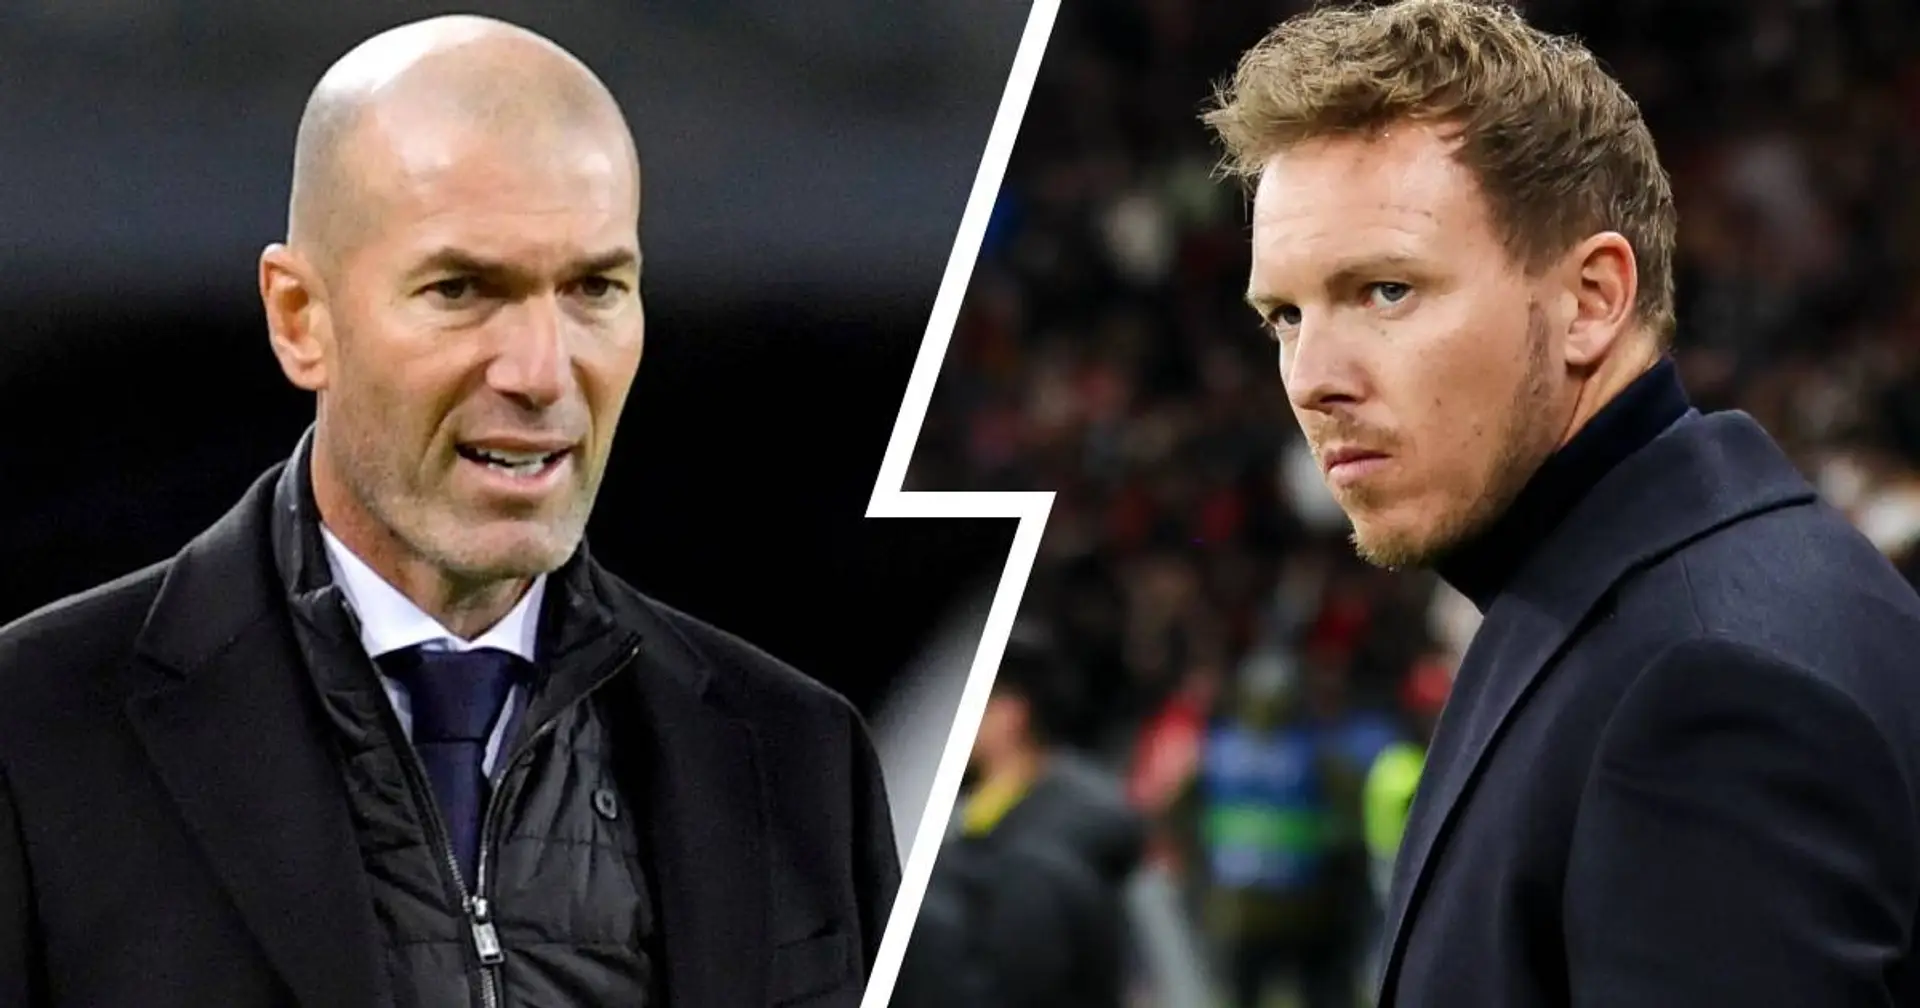 Zidane ist kein heißer Kandidat bei Bayern, Nagelsmann bleibt Top-Favorit - Romano